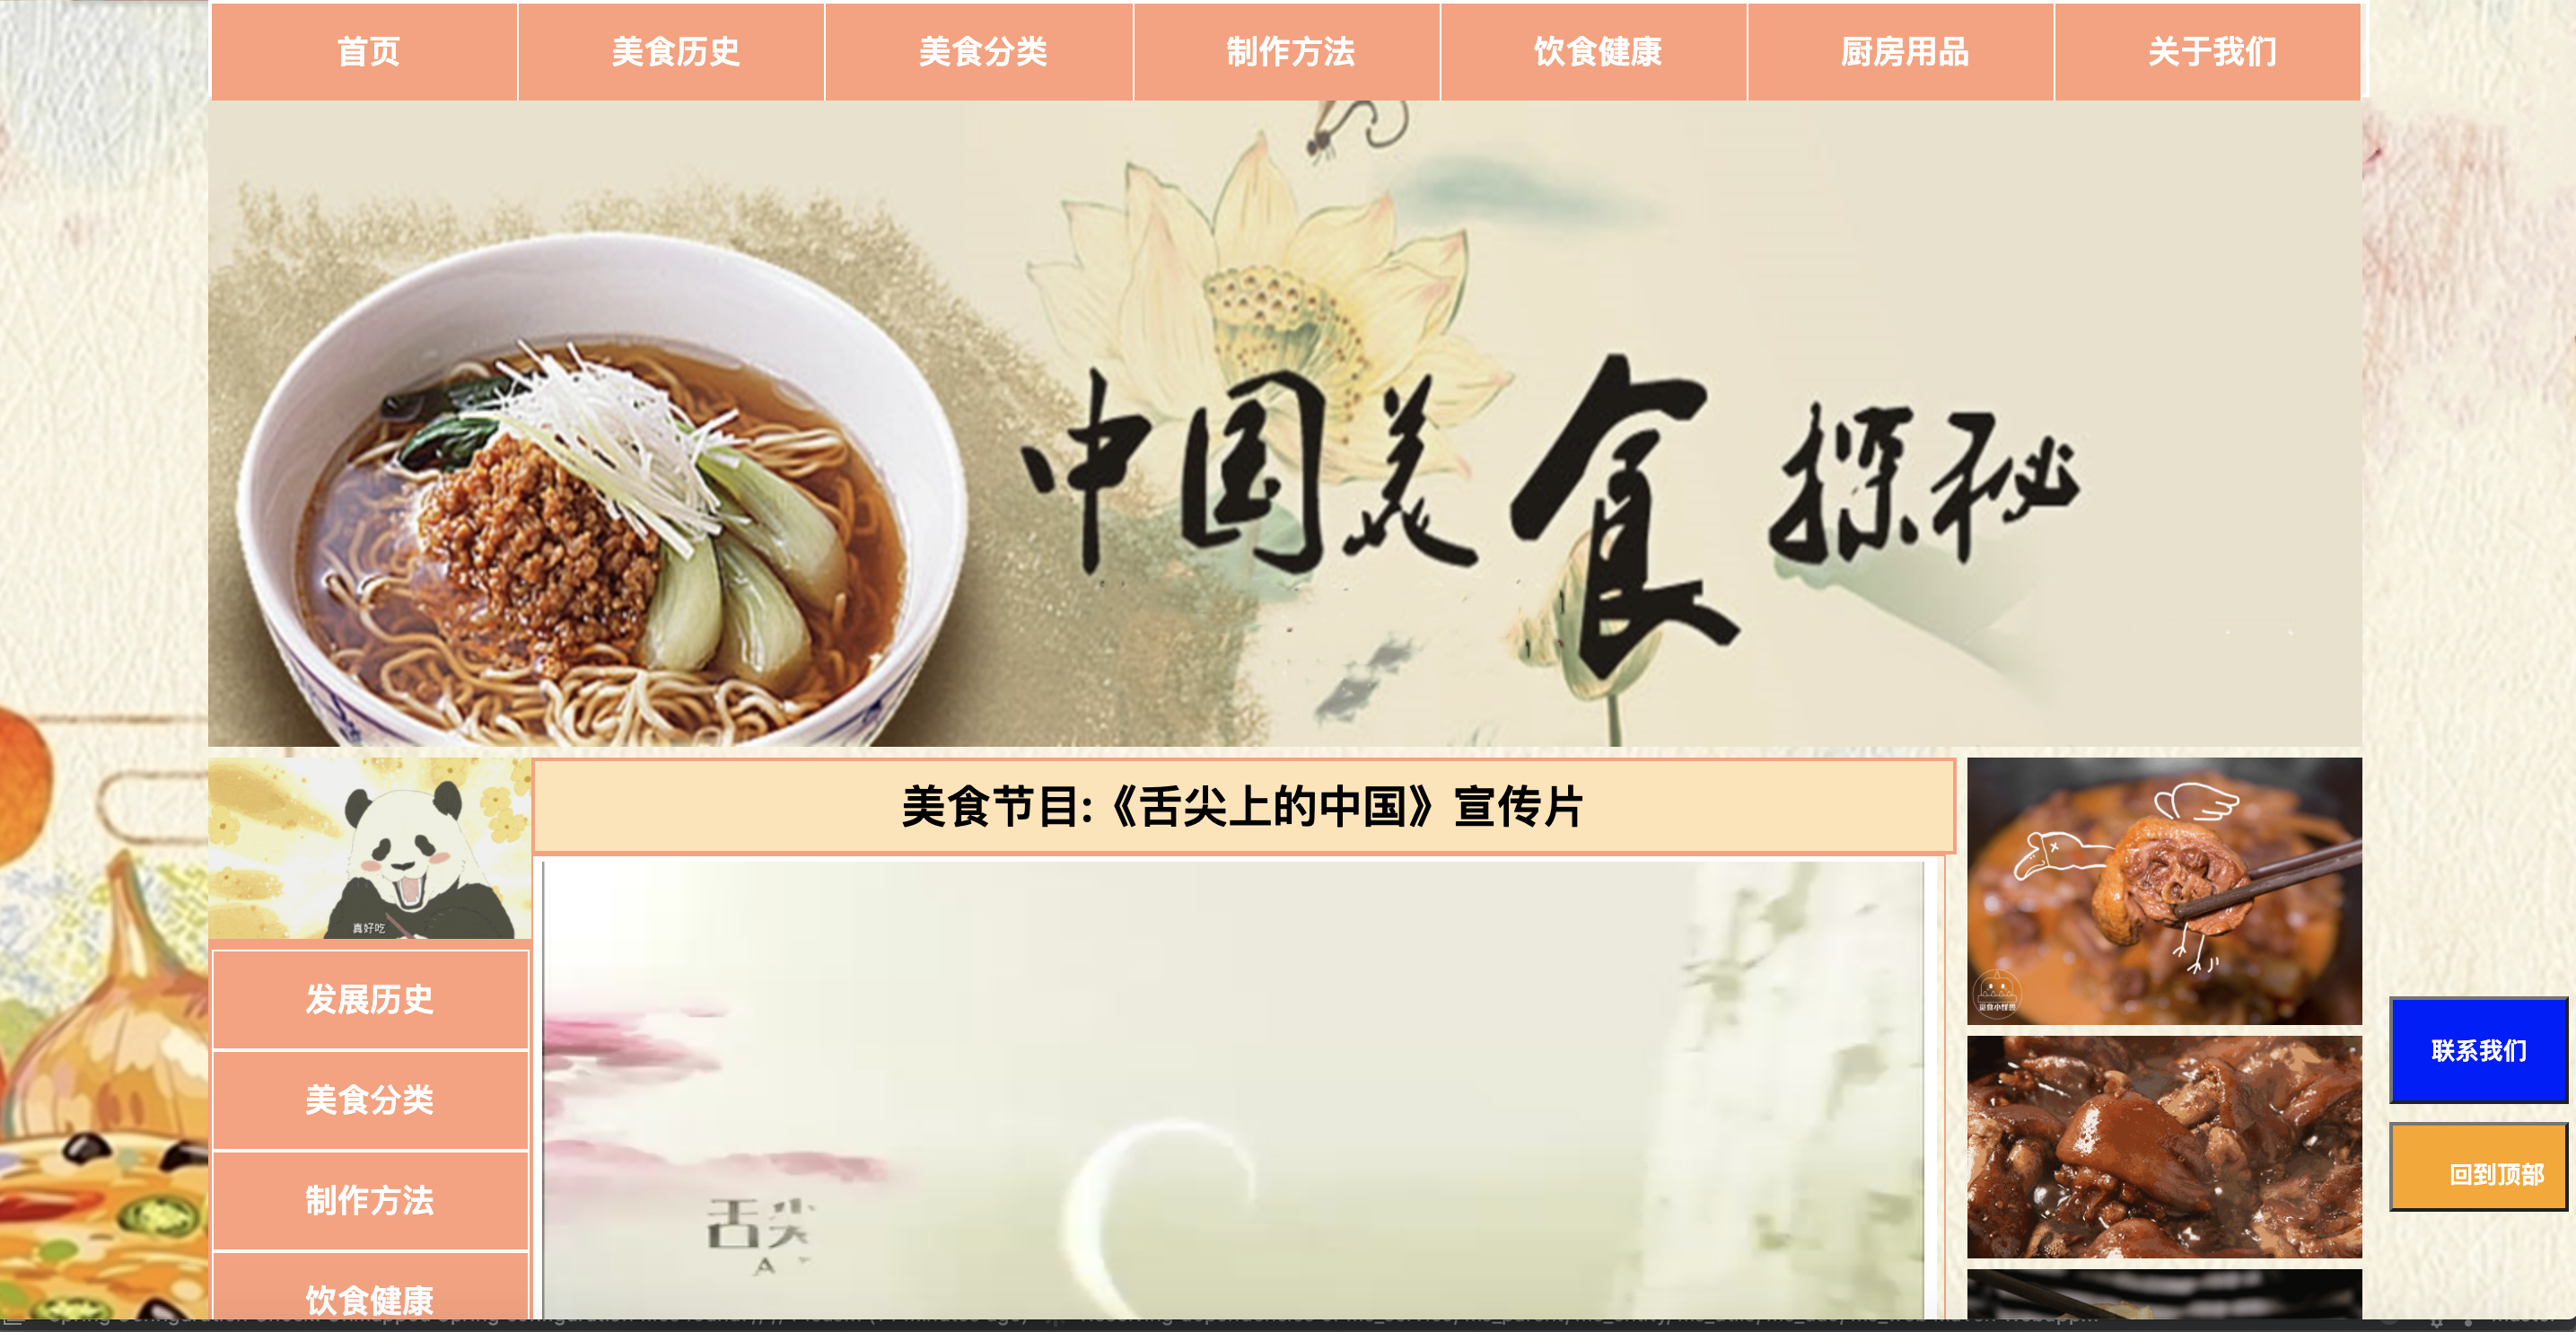 美食网站主页java代码,中华美食网  Javaweb静态界面